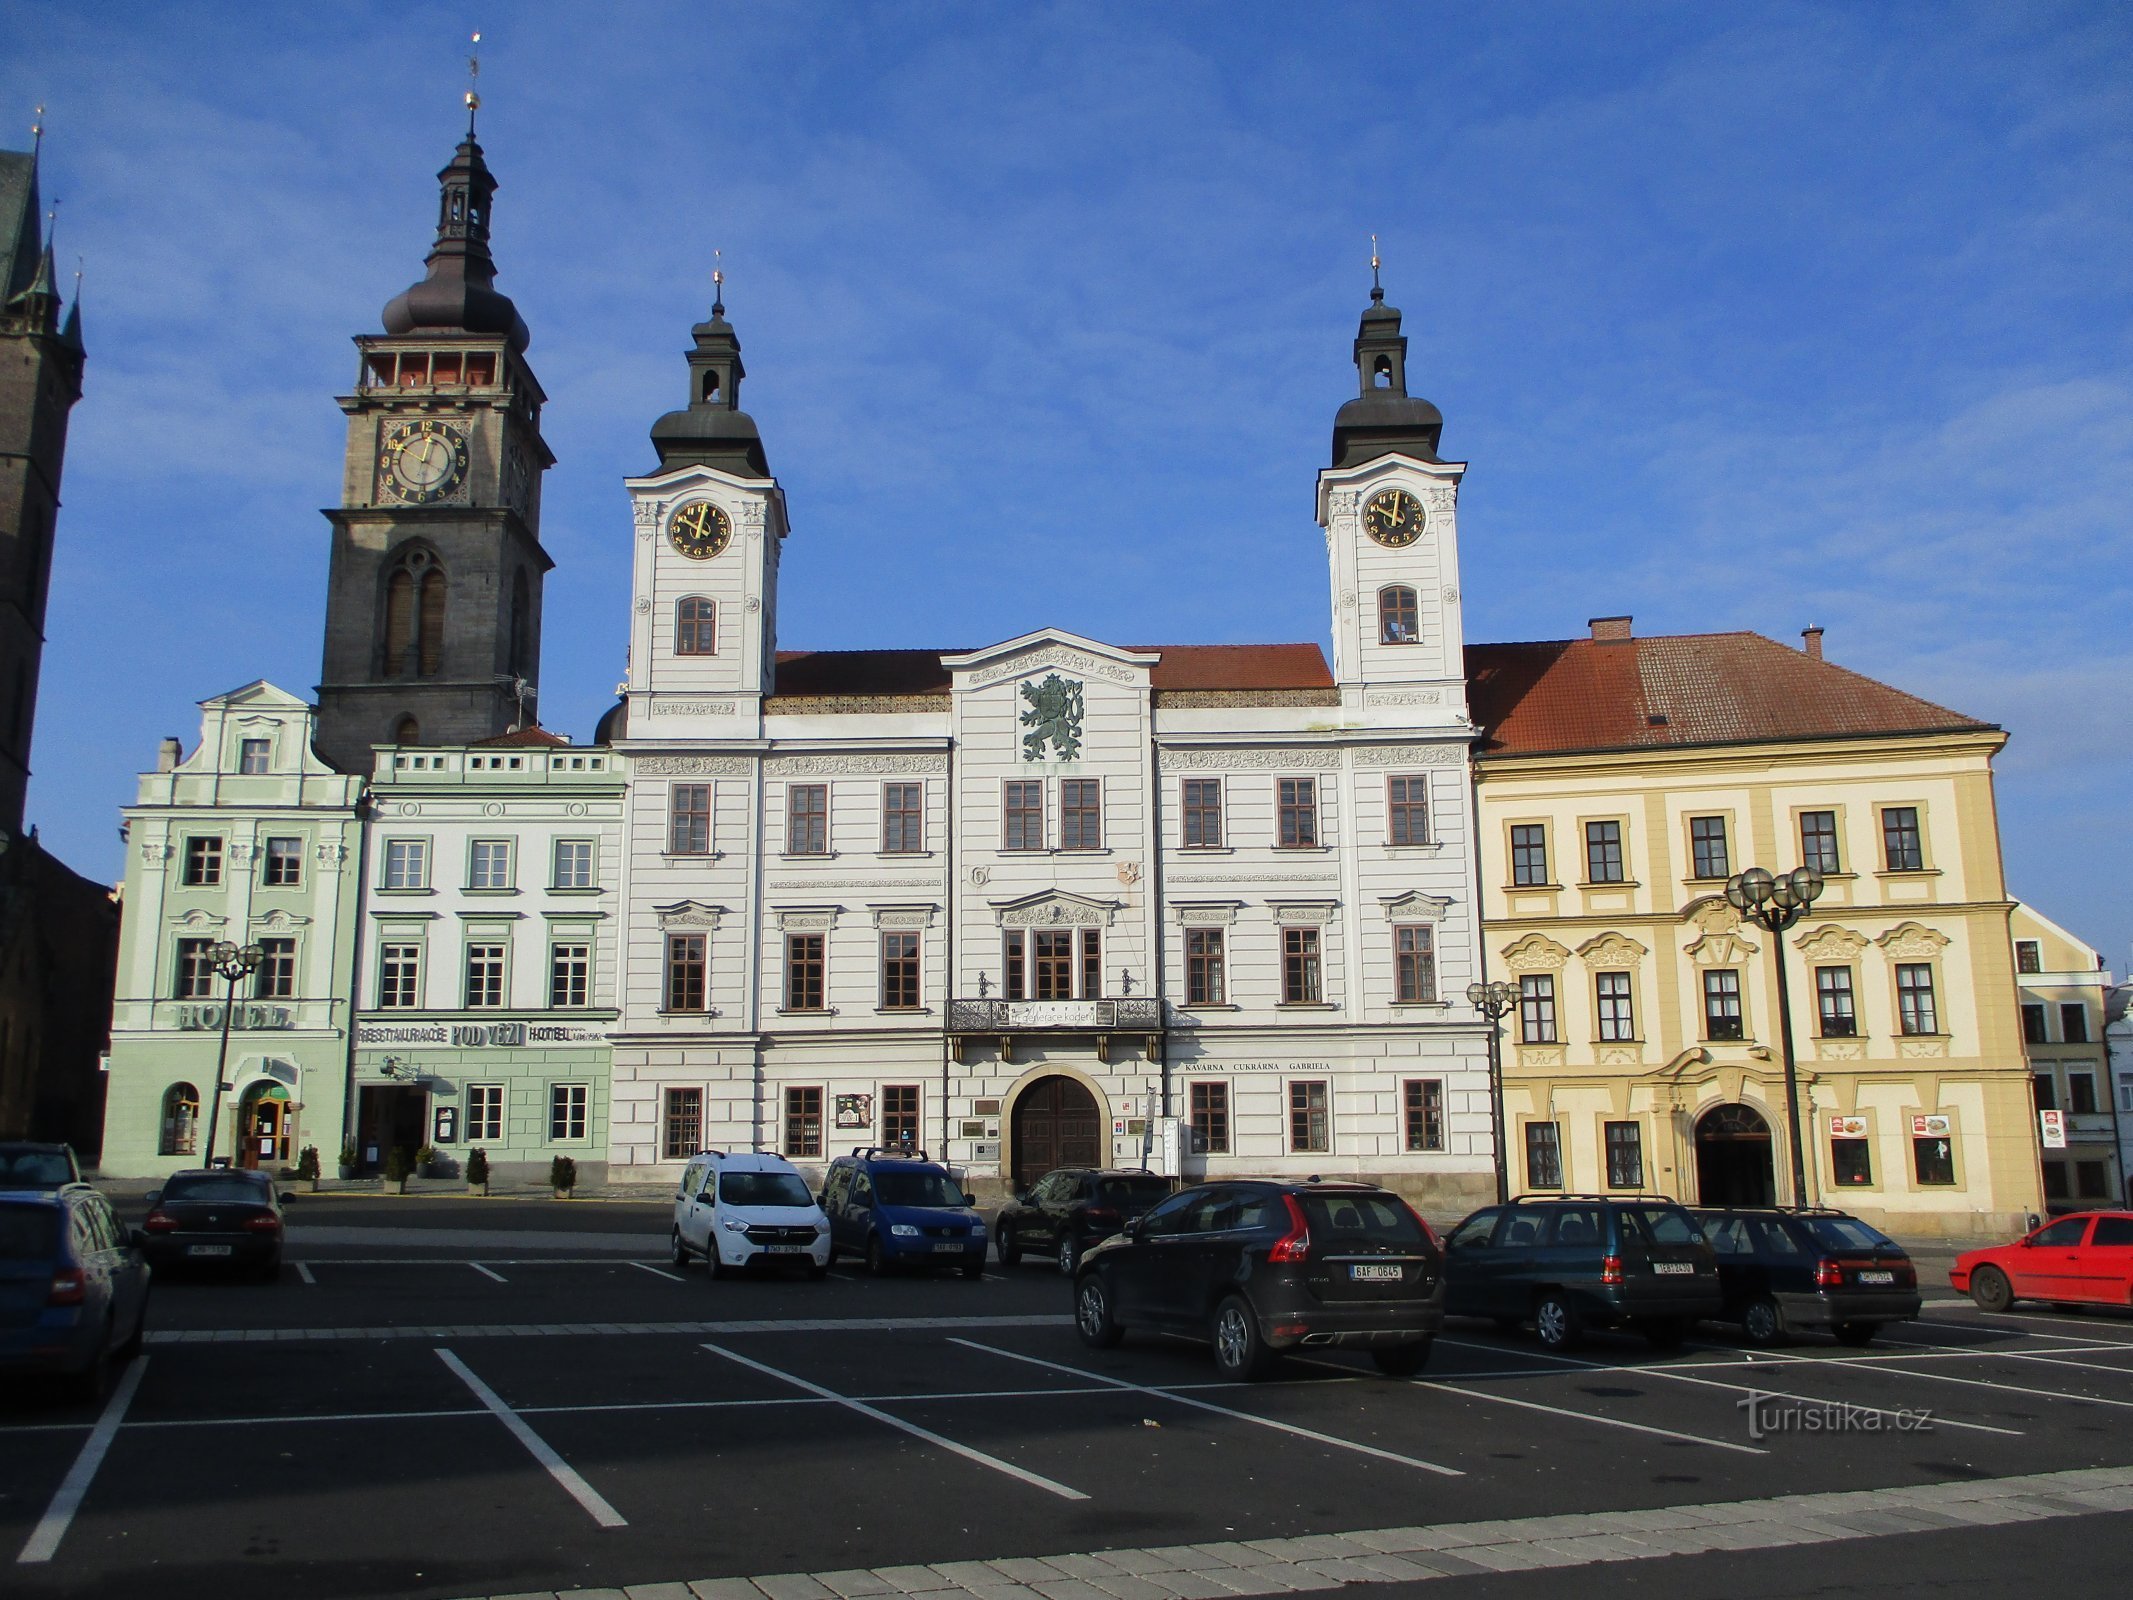 Den vestlige række af huse i Velké náměstí (Hradec Králové, 9.2.2020. februar XNUMX)